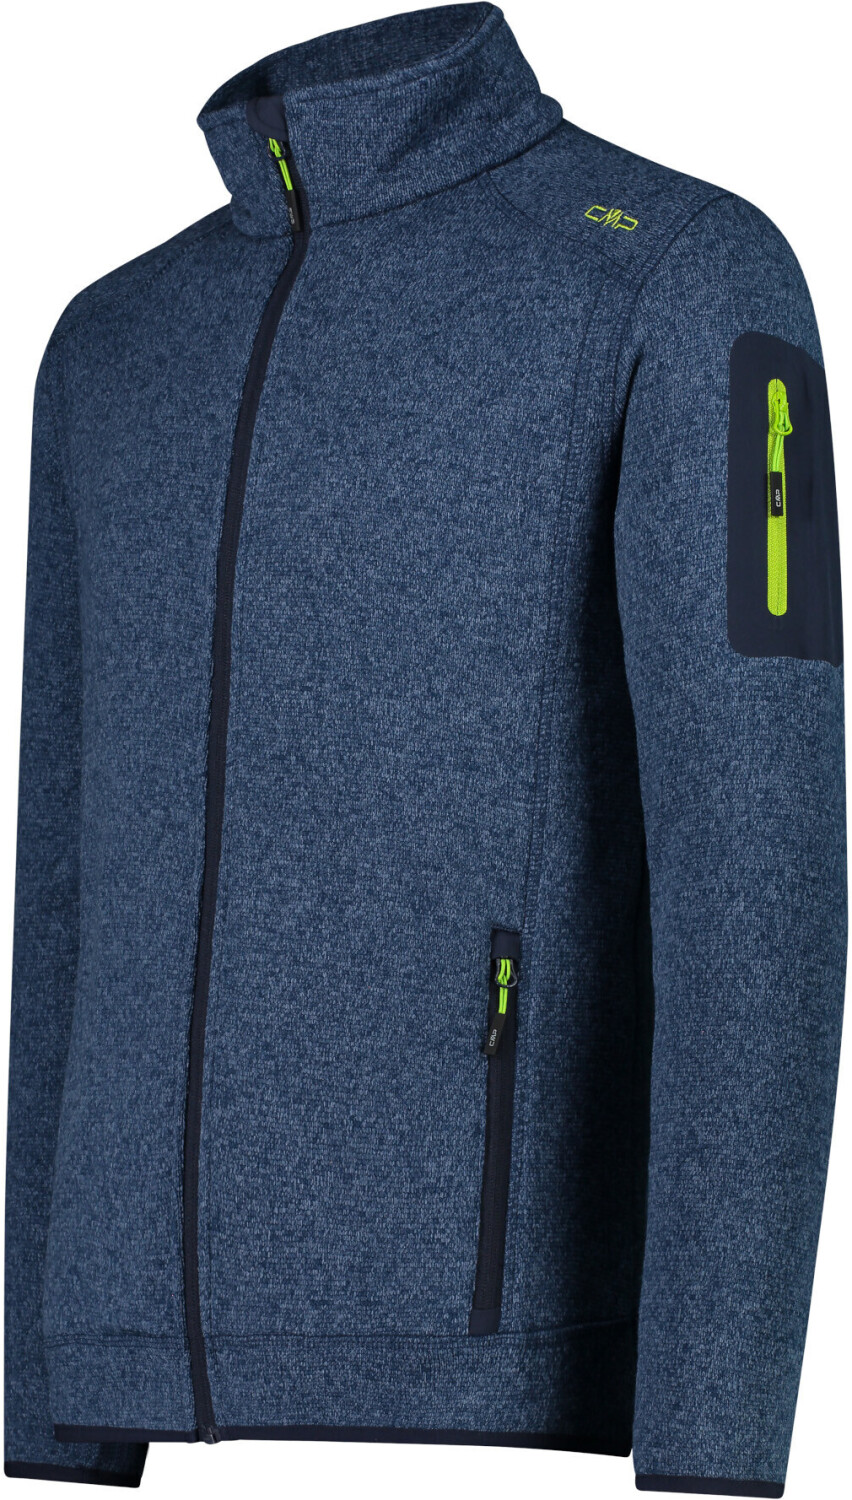 CMP Knit-Tech Jacket 39,99 Preisvergleich (3H60747) ab € | blue-limegreen bei